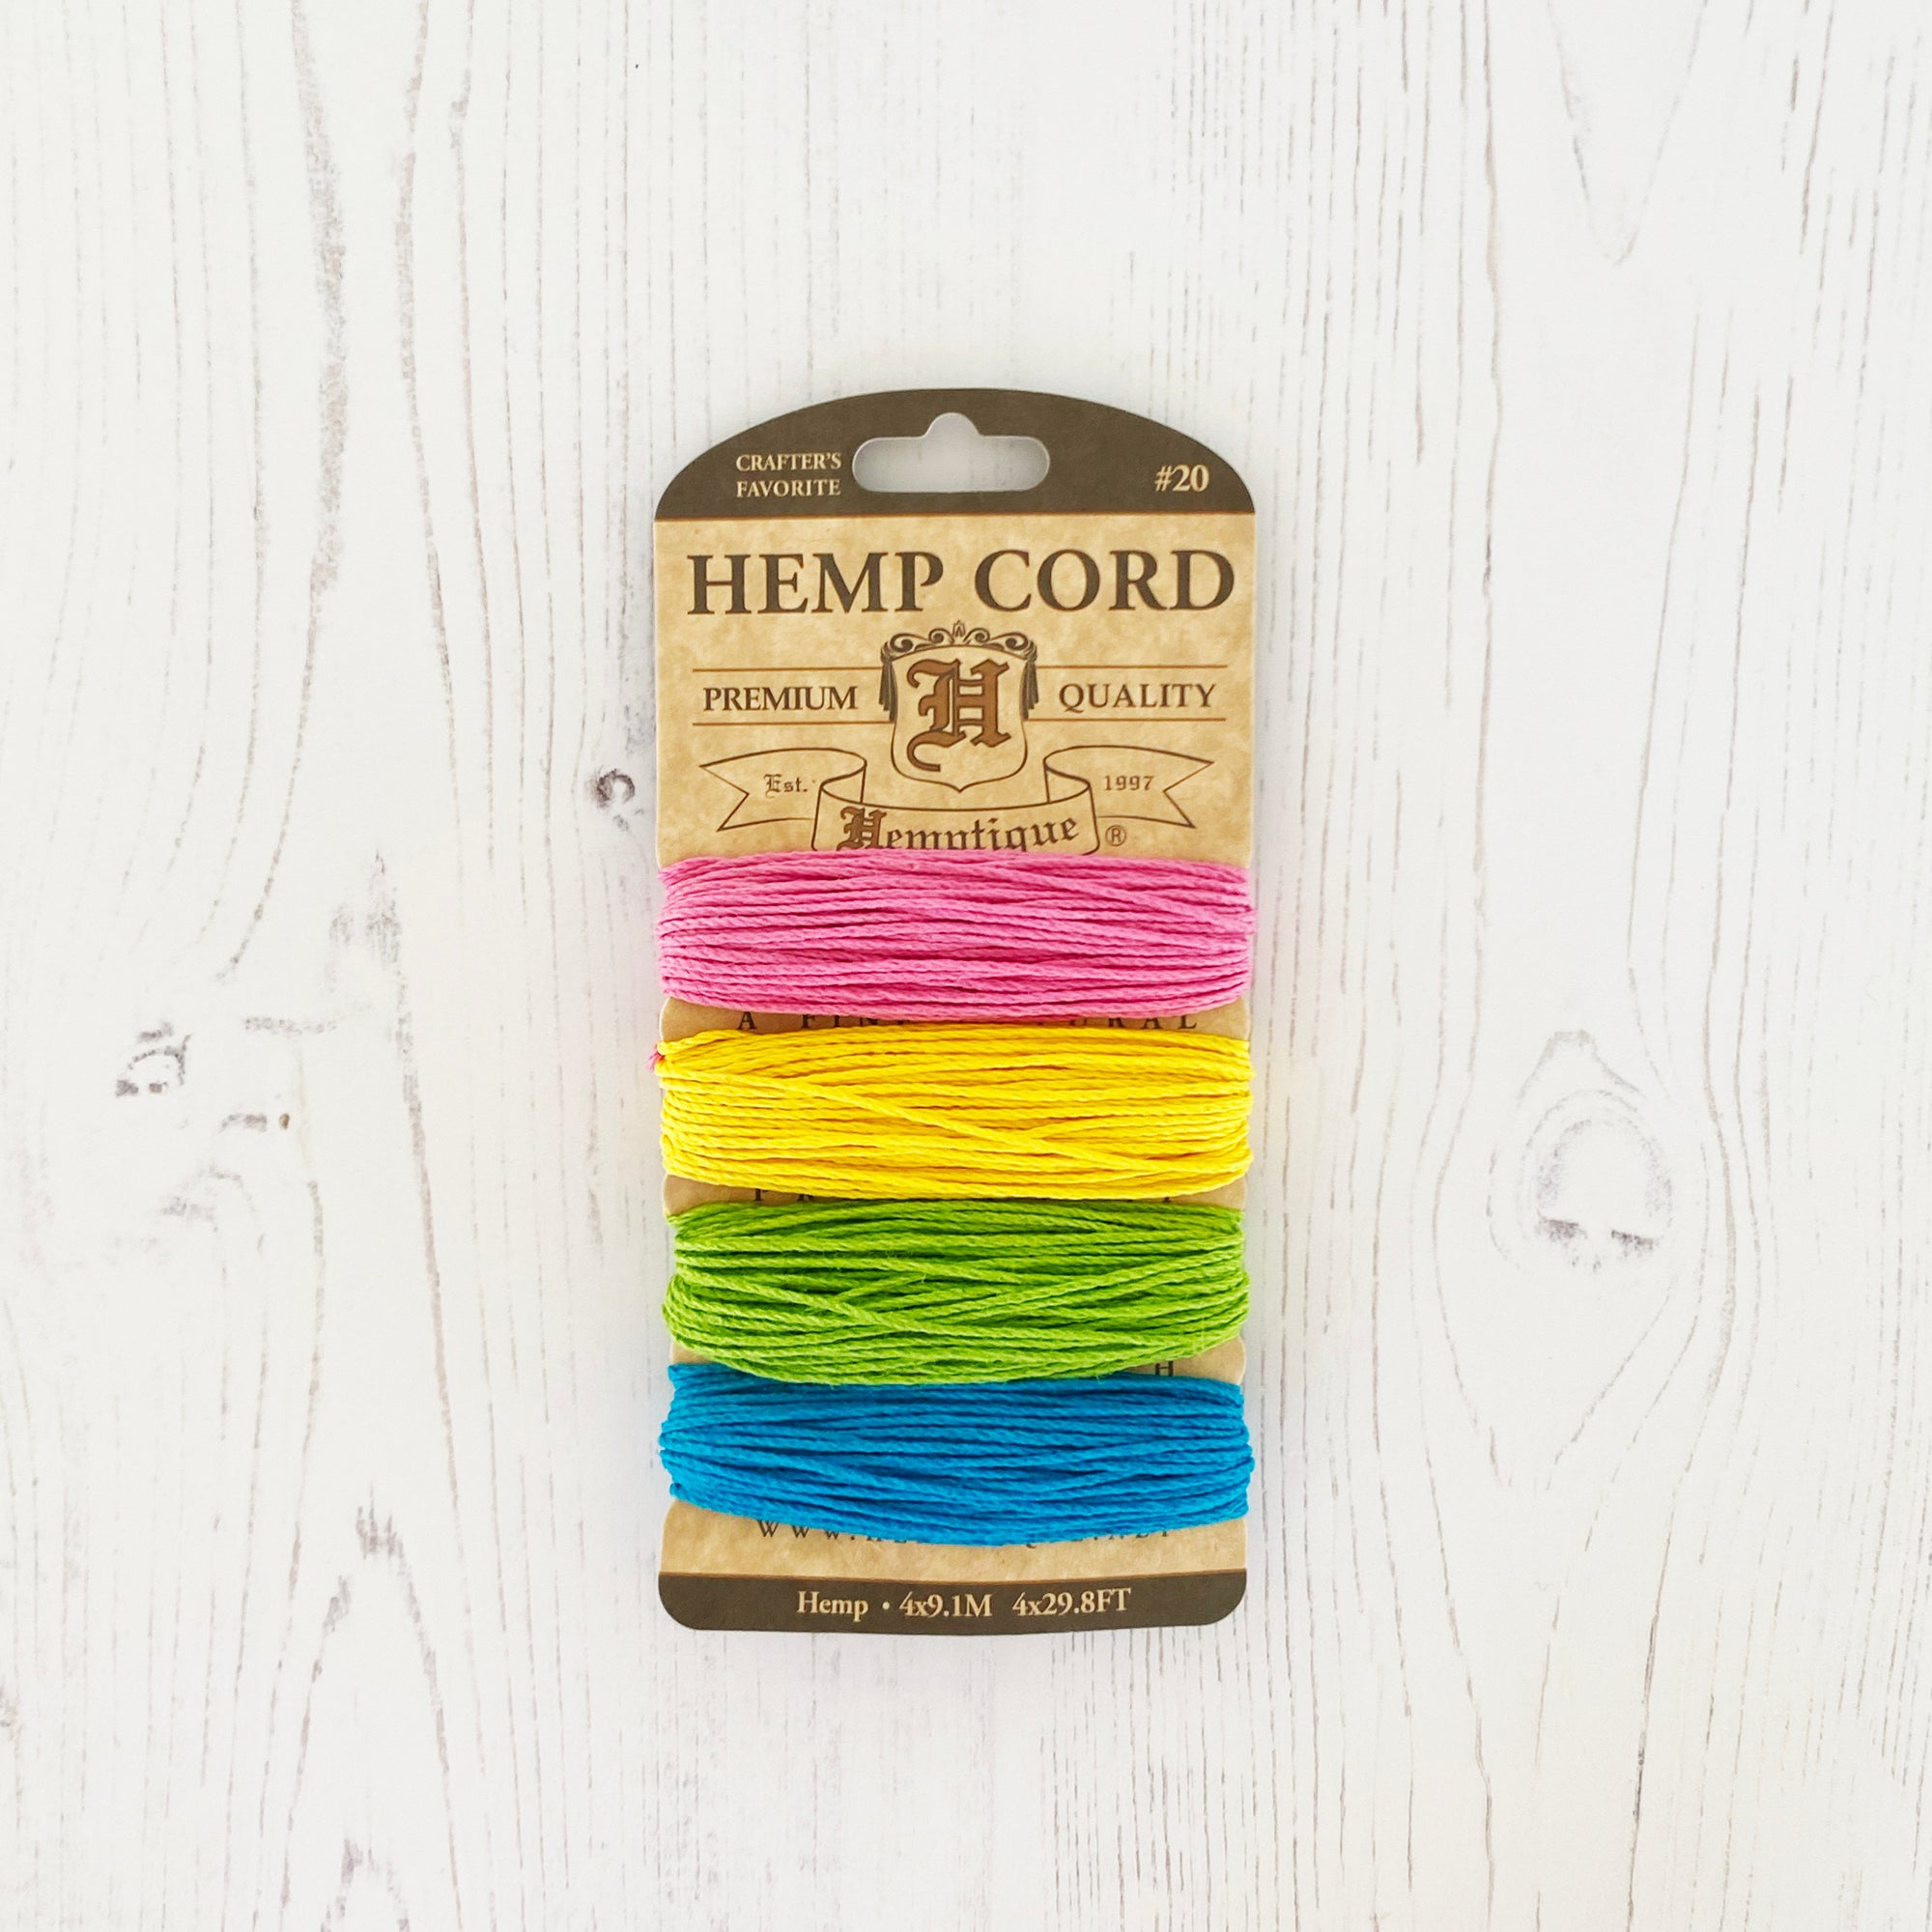 Hemptique 100% Hemp Cord, 4 x 9.1m, 1mm wide. Colour: Razzle